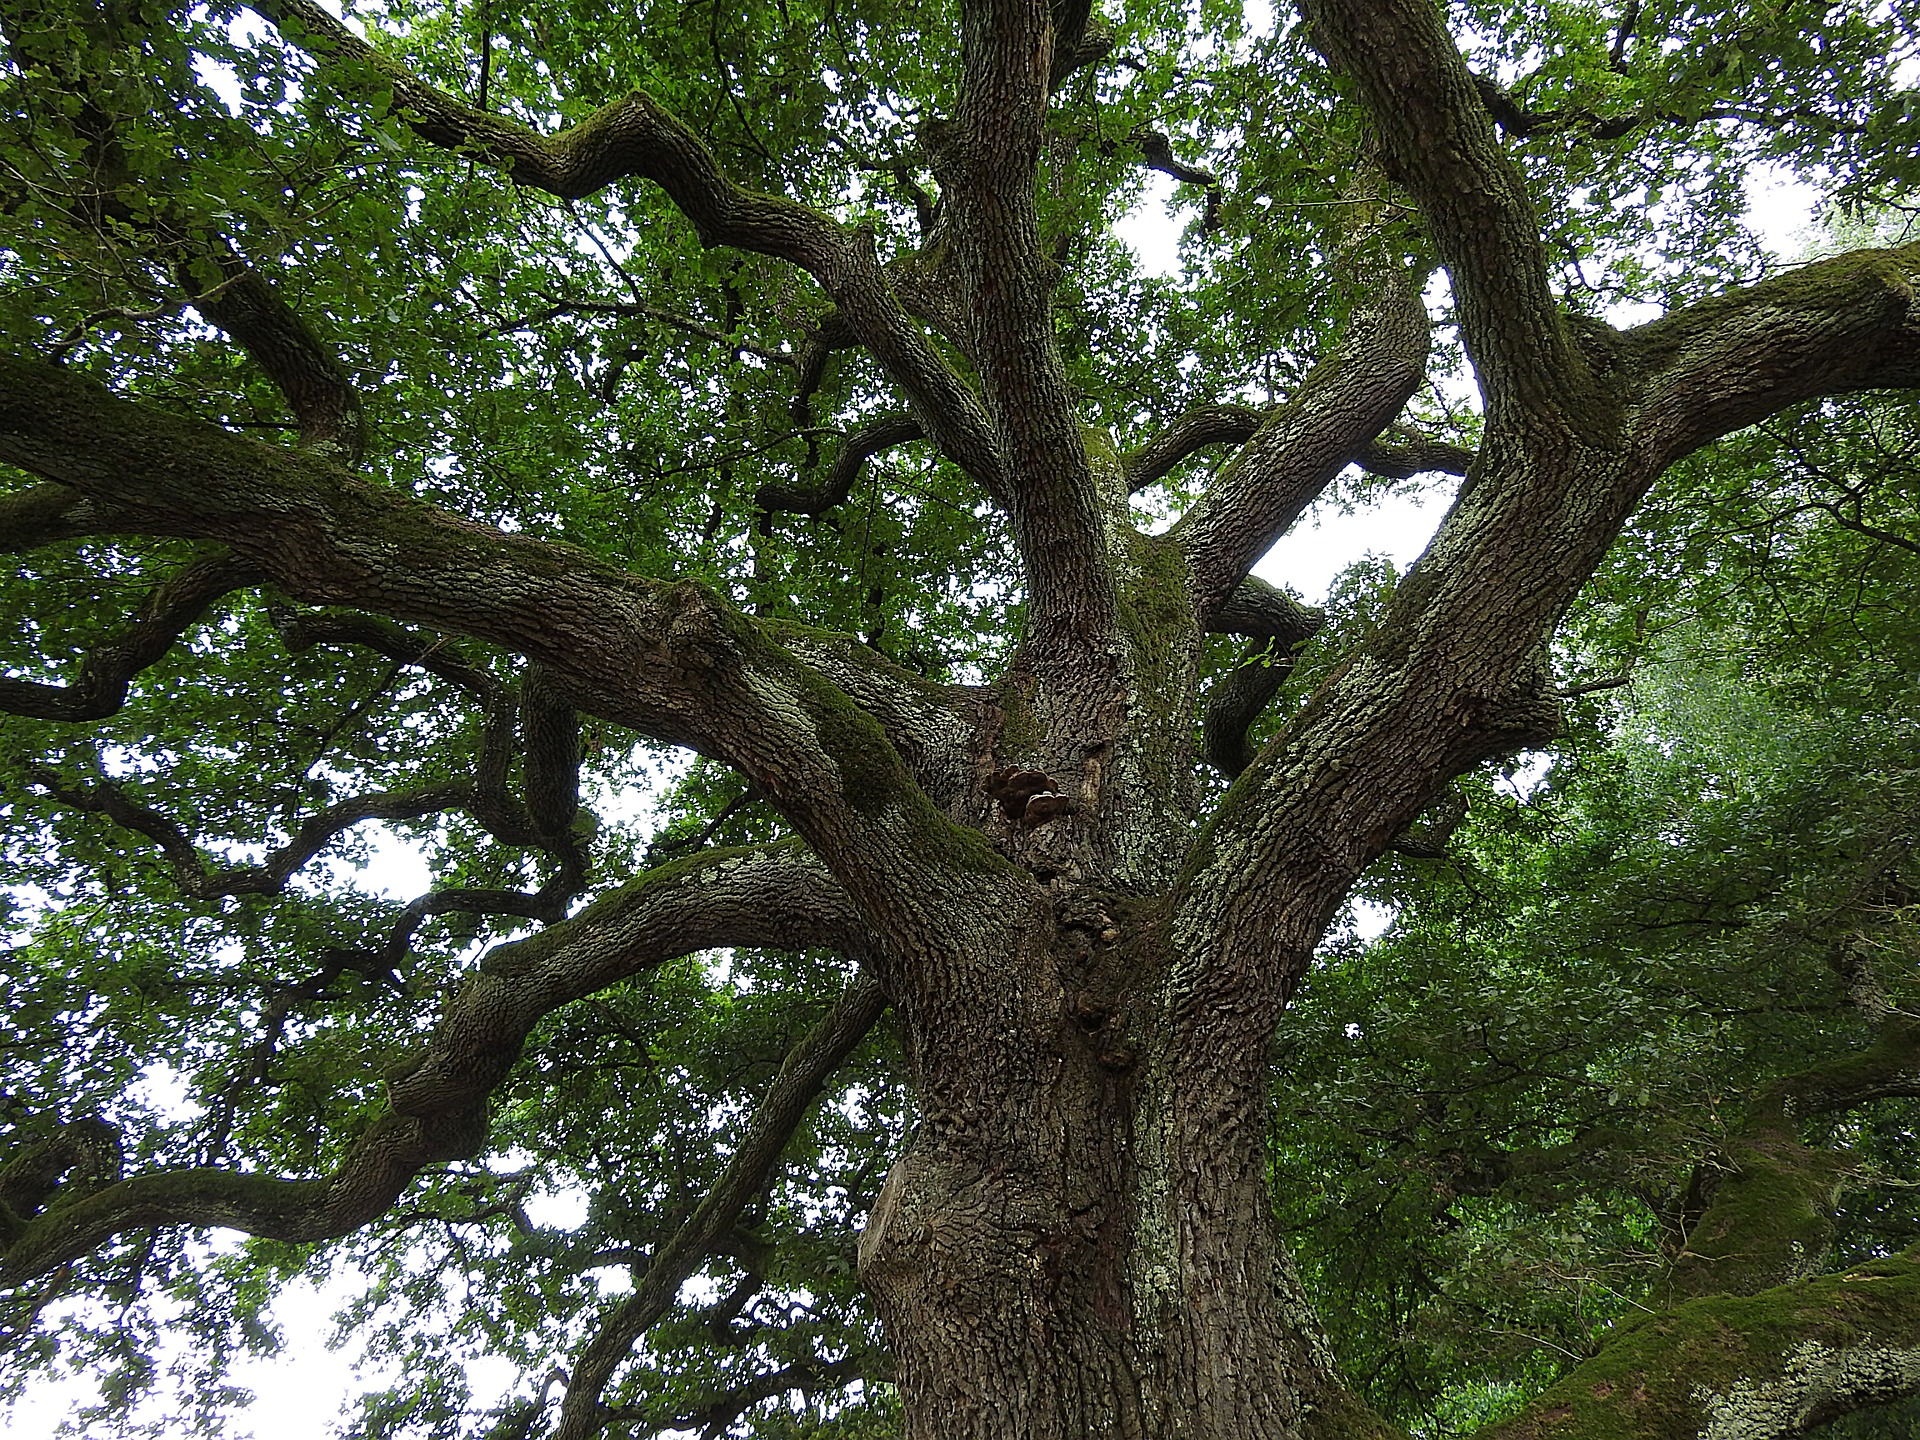 A huge old oak